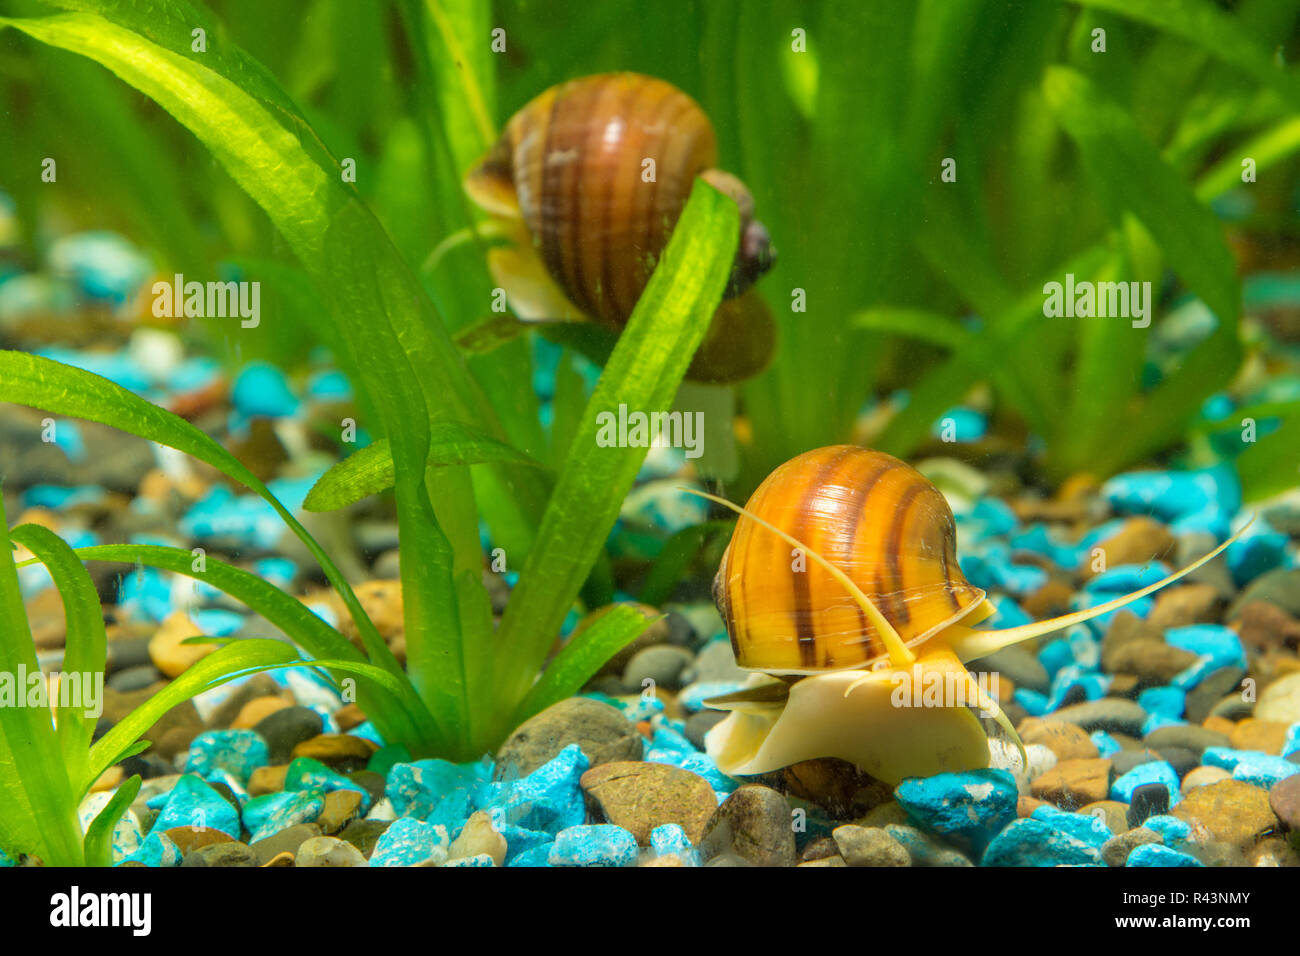 Two big snails in the aquarium Ampularia Stock Photo